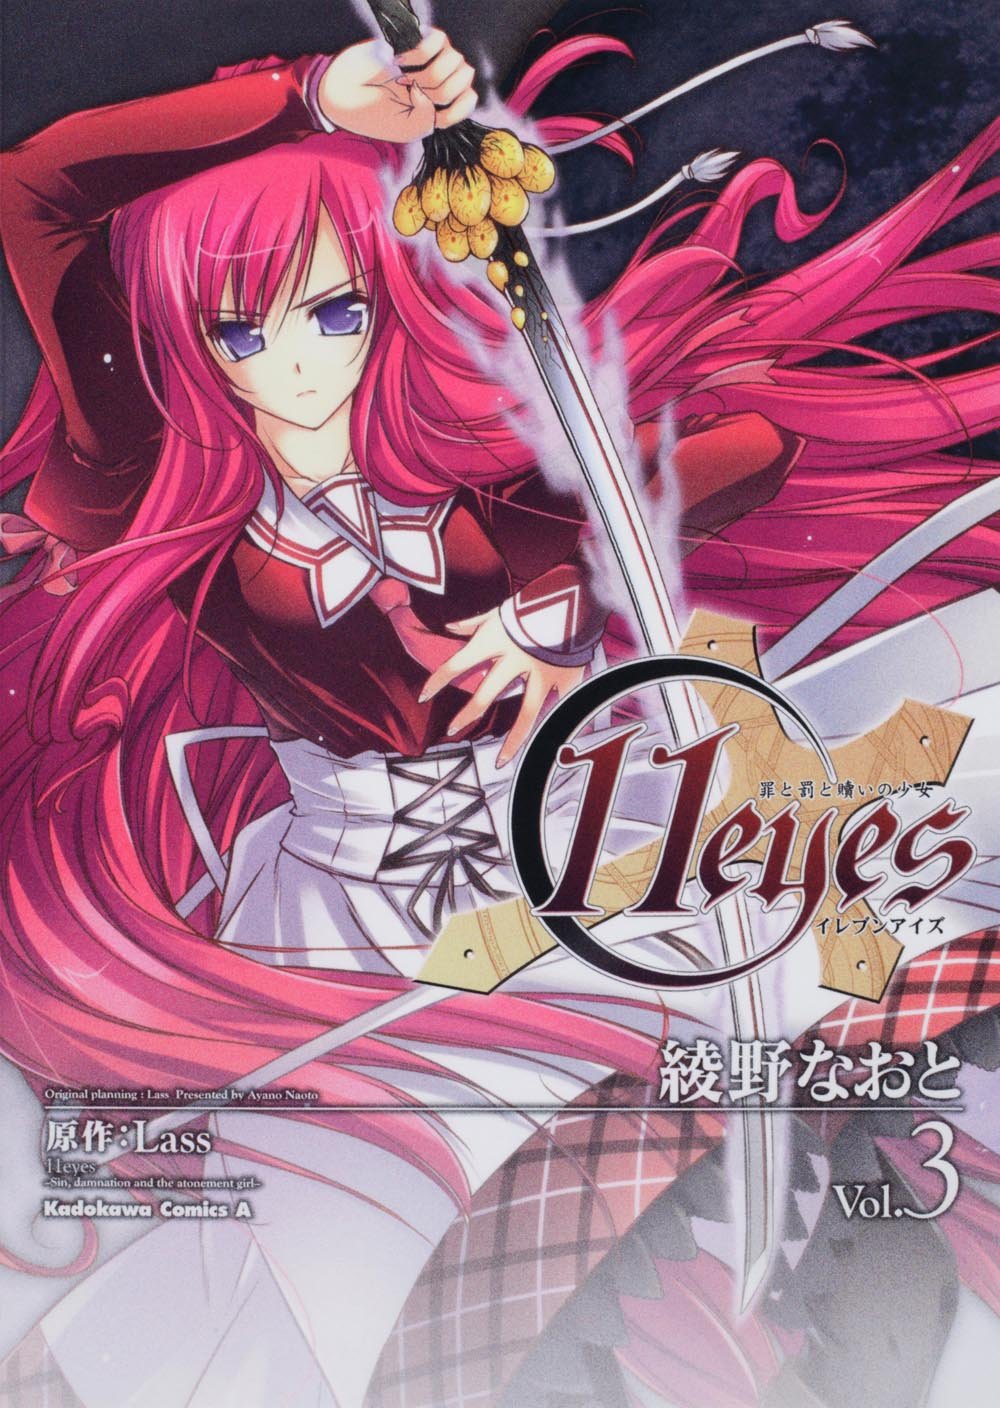 11eyes (TV) - Anime News Network